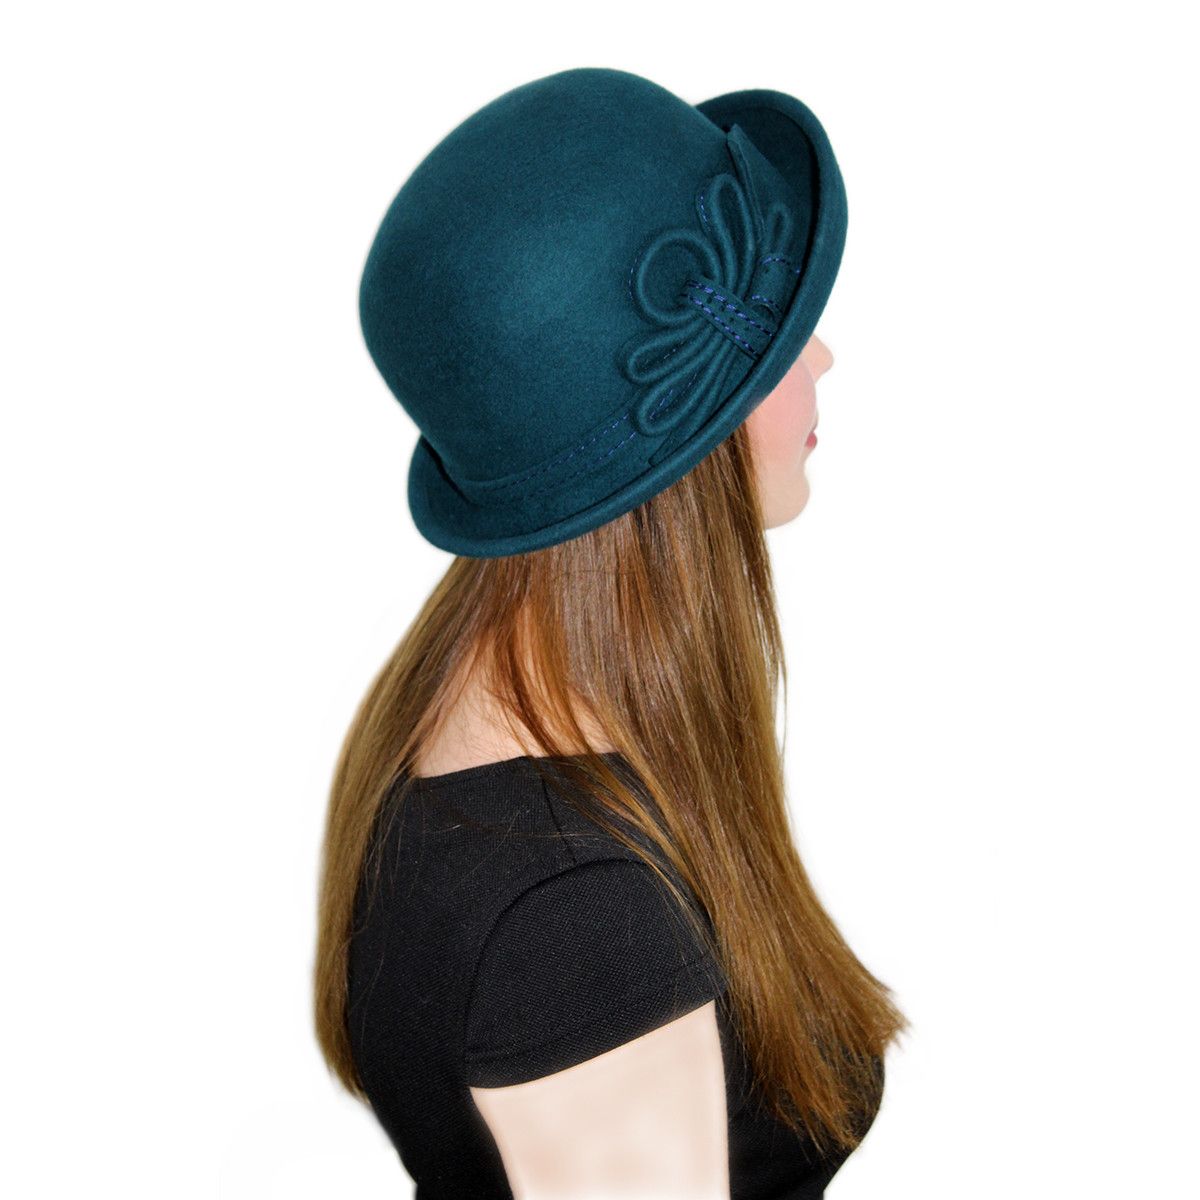 Шляпа на букву к. Шляпка в стиле Мурки. Голубая фетровая женская шляпа ретро. Фетровая женская шляпа жокейка со складкой. Шляпки женские фетровые своими руками.